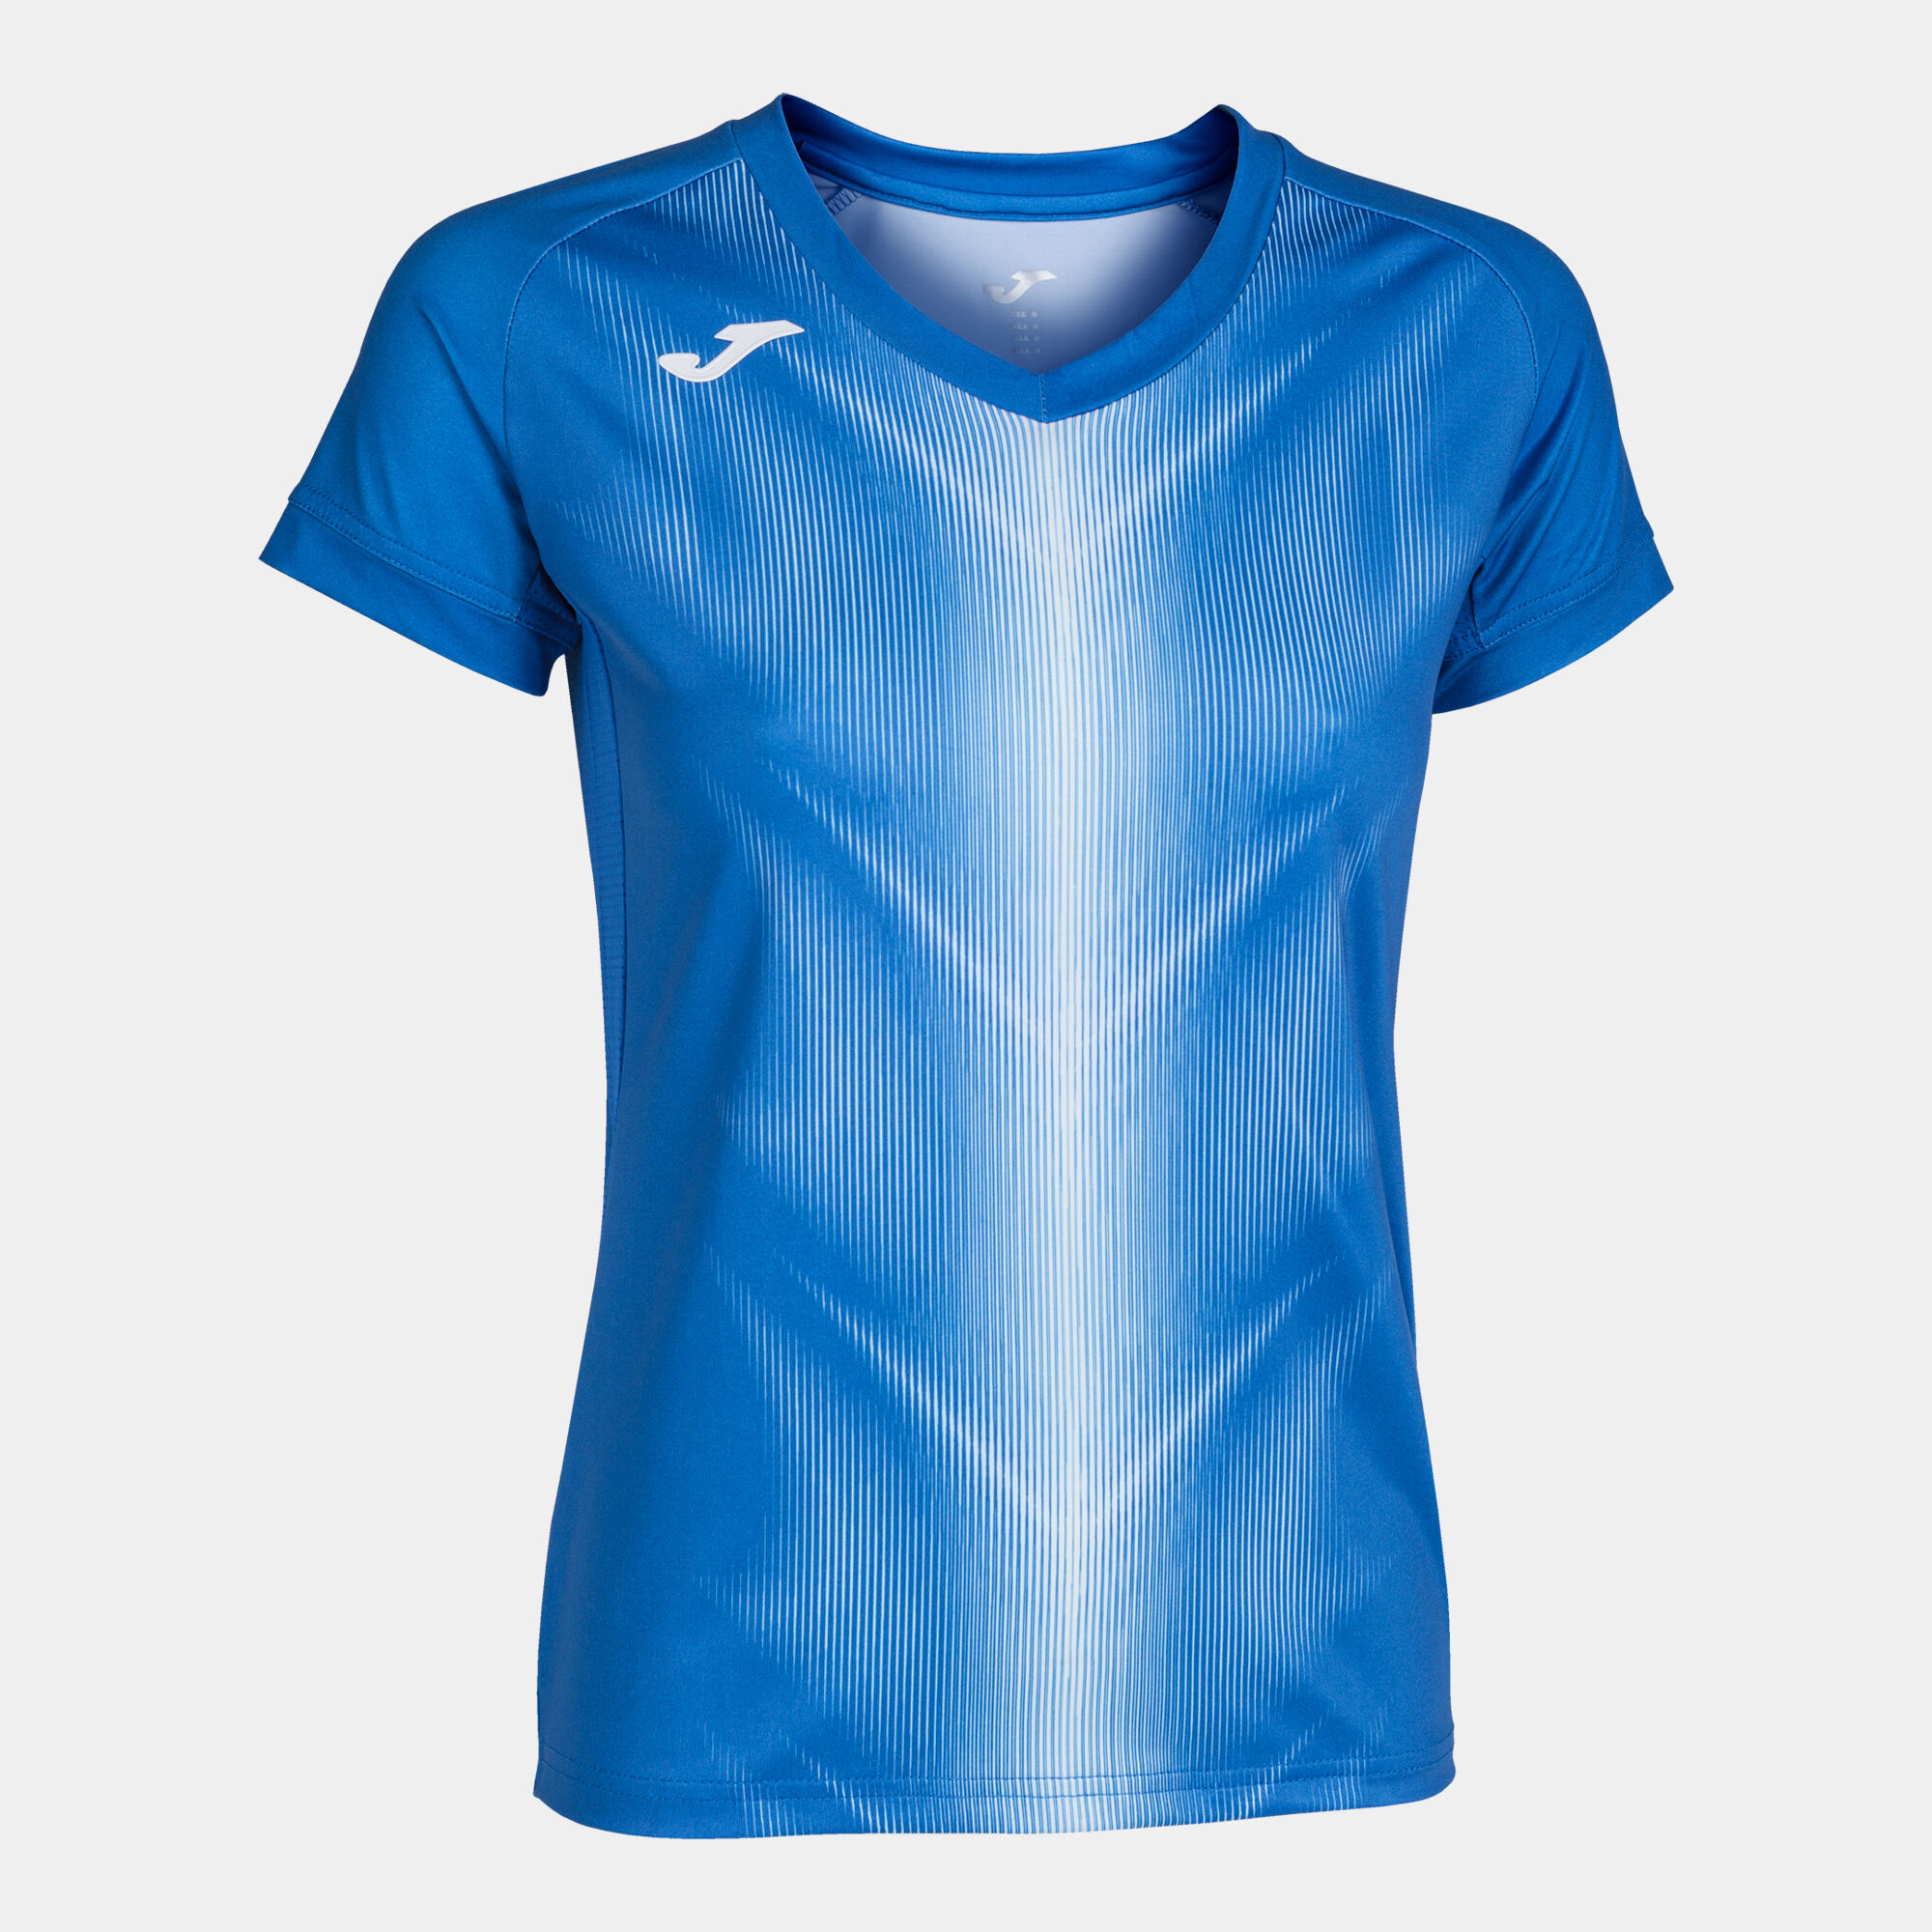 Koszulka z krótkim rękawem kobiety Olimpia niebieski royal bialy